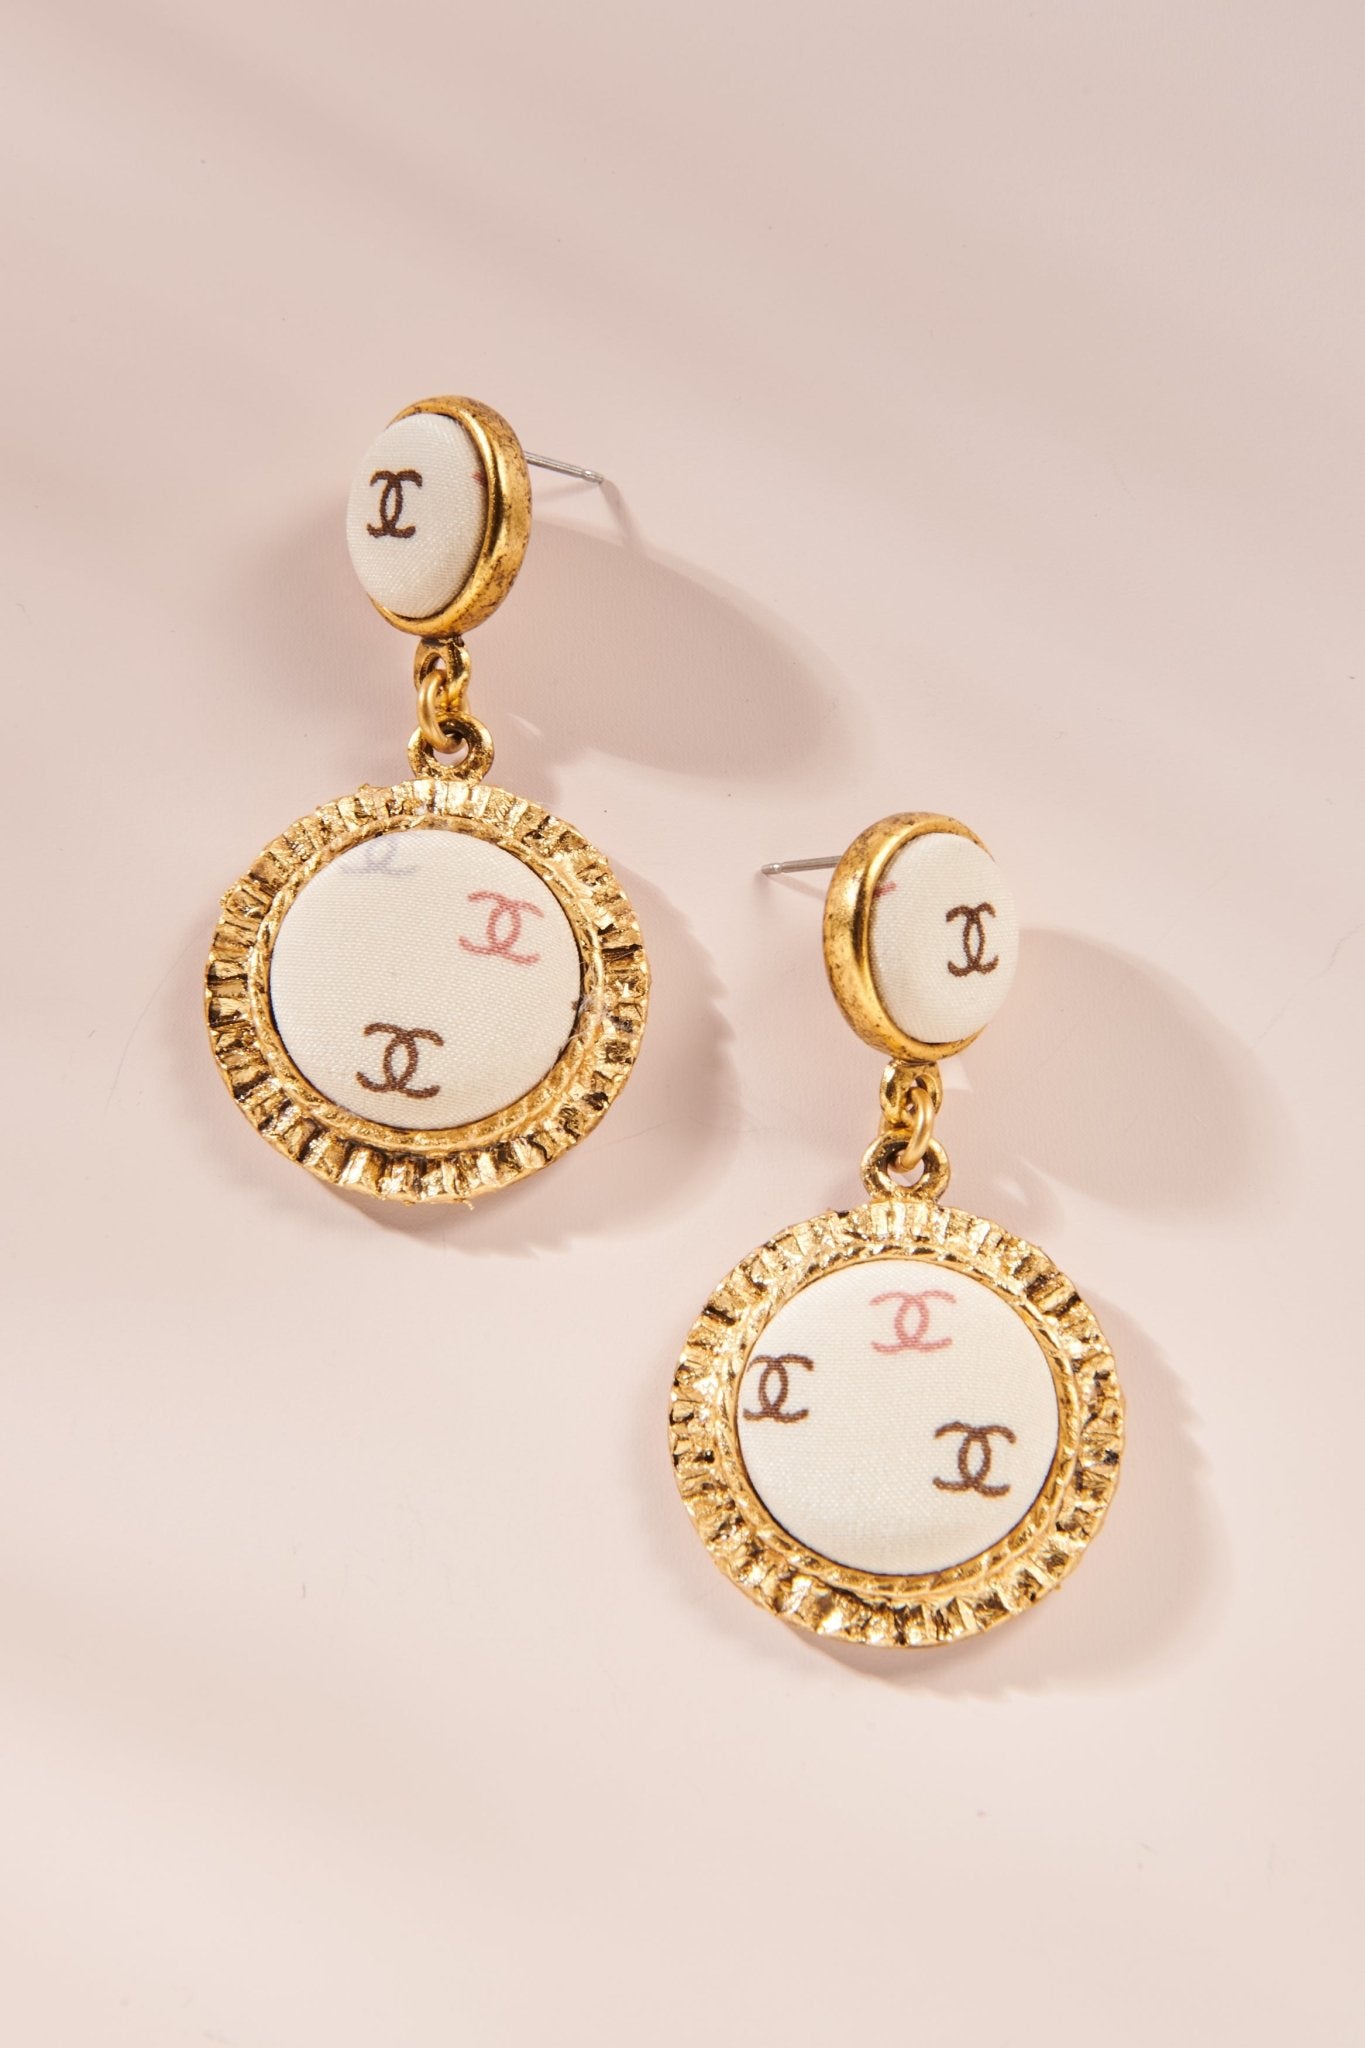 Share 161+ luxury drop earrings 